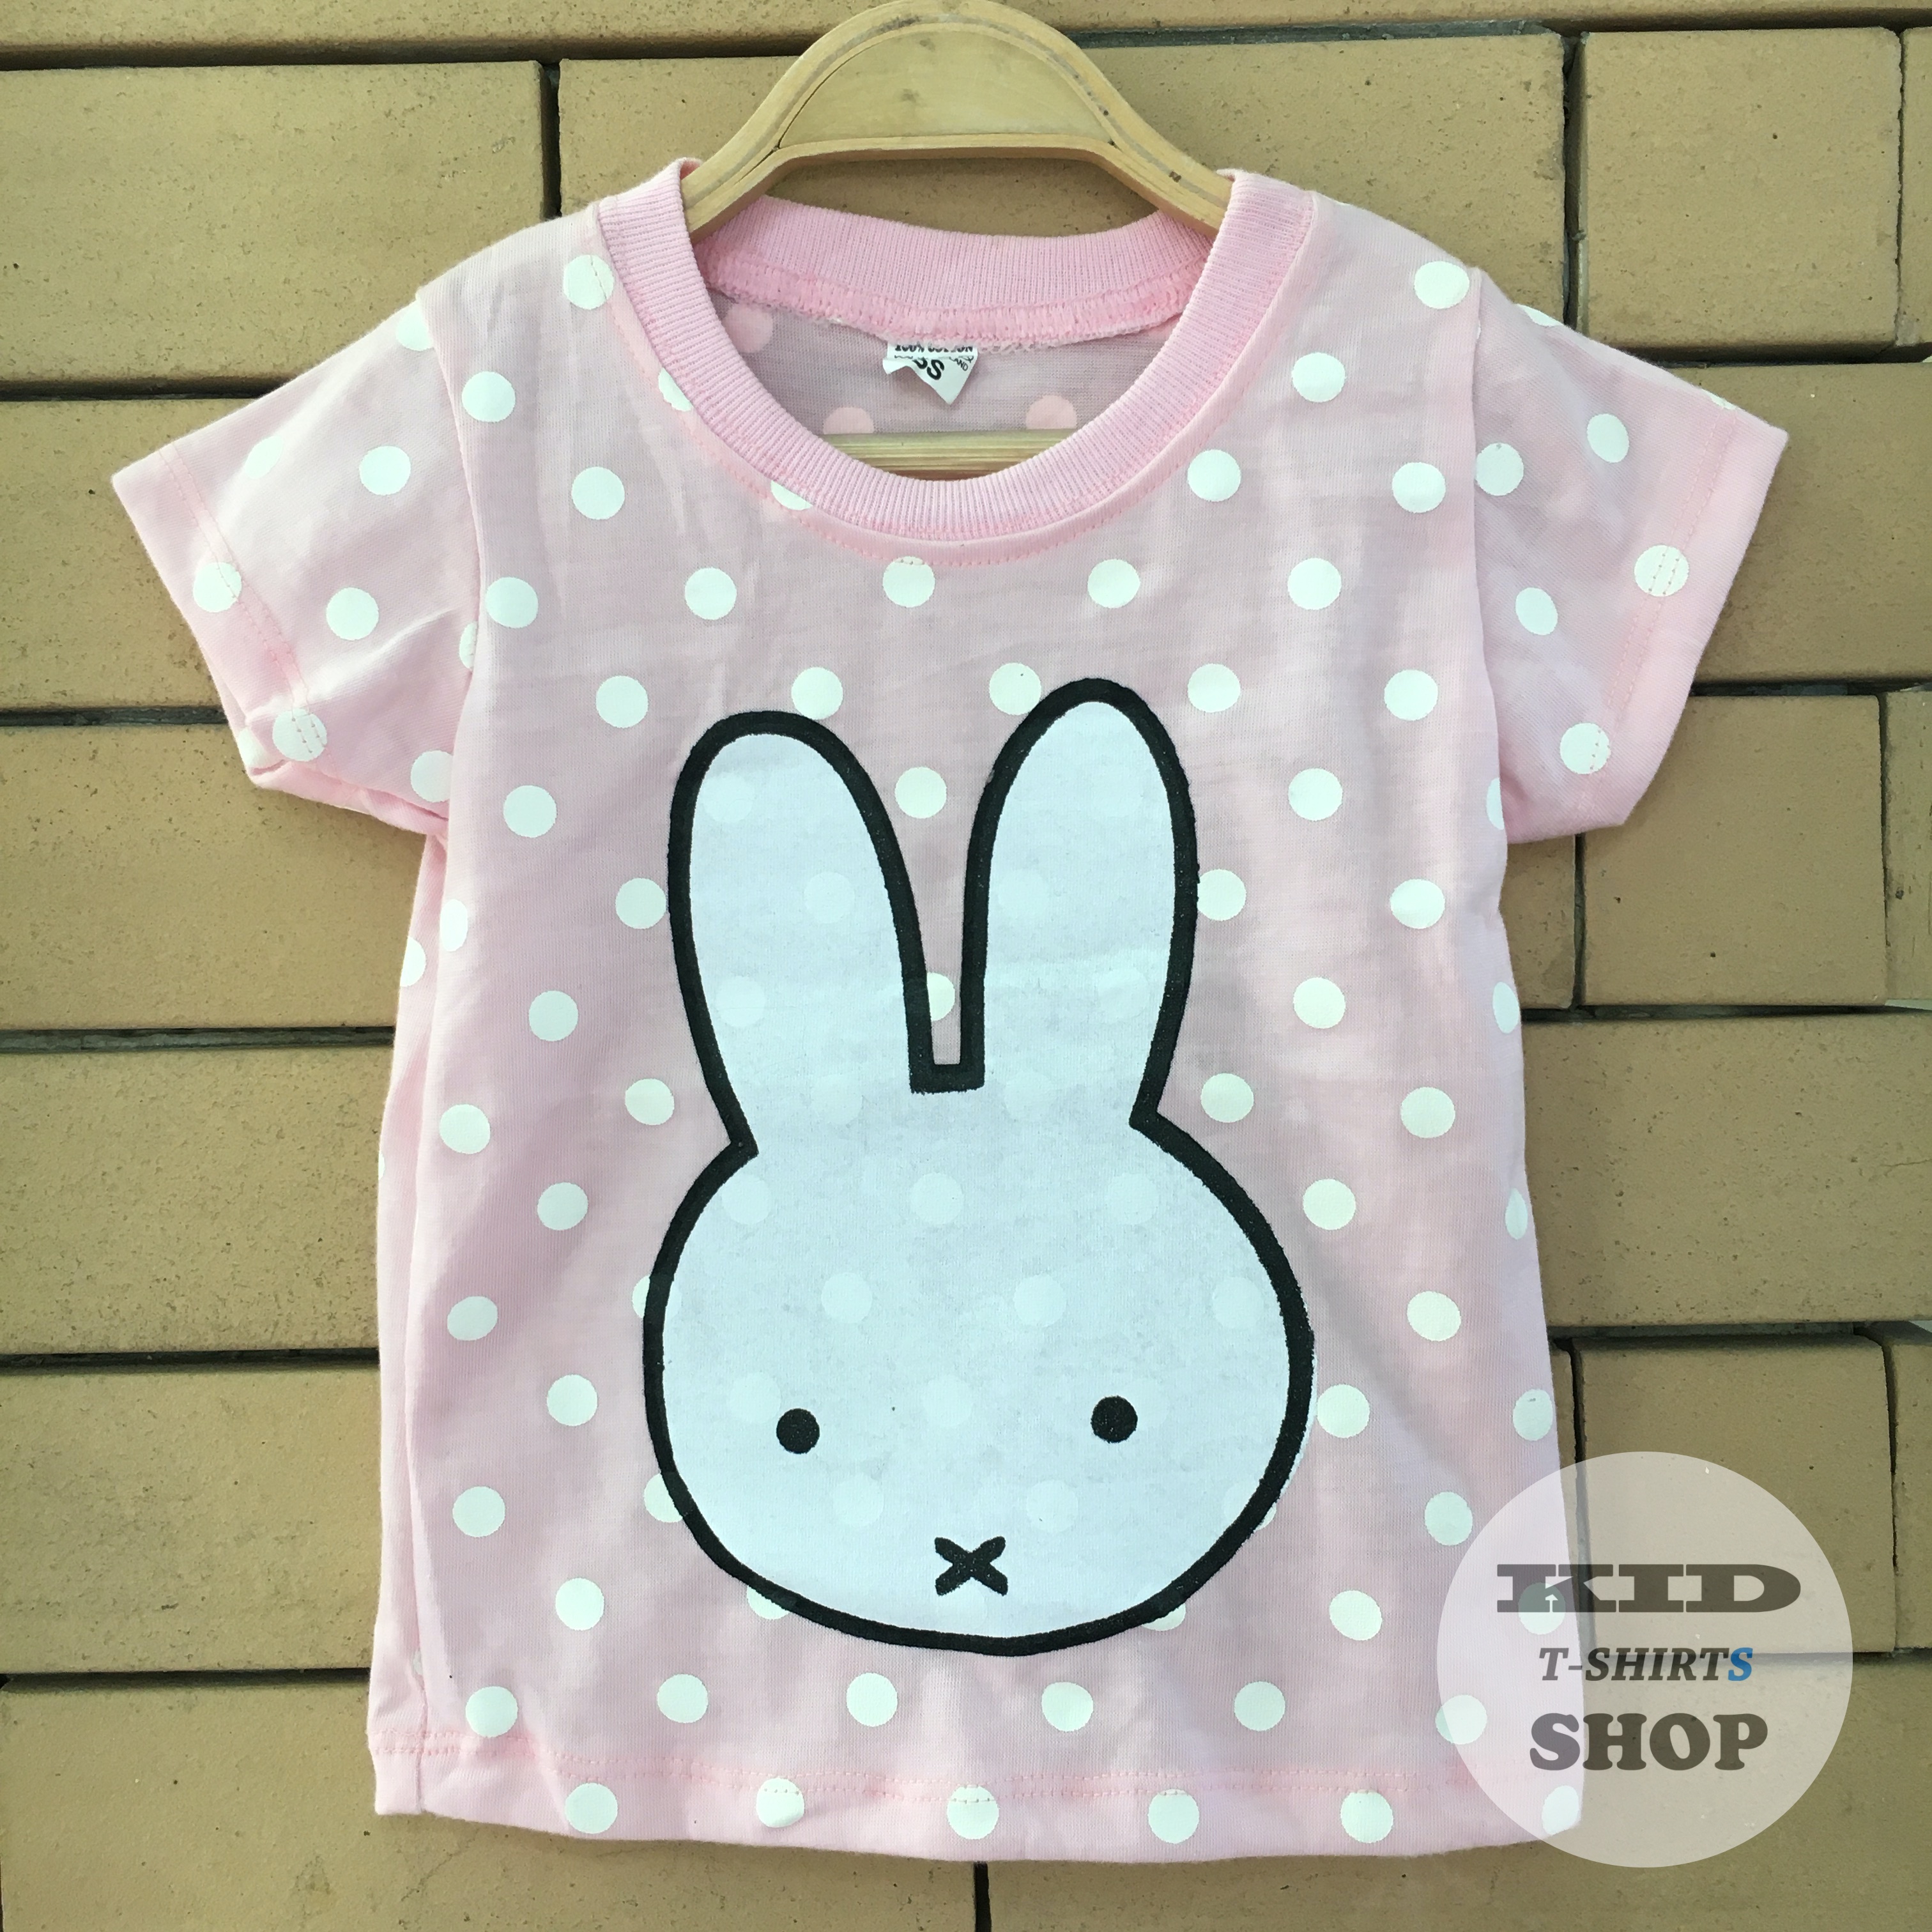 BabyOutlet เสื้อยืดเด็ก ลาย กระต่าย Rabbit สีชมพู แขนสั้น มี 4 ไซส์ (SS , S , M , L) เสื้อเด็ก มี Size แรกเกิด - 6 ปี ผลิตจากผ้าฝ้าย 100% ชุดเด็ก